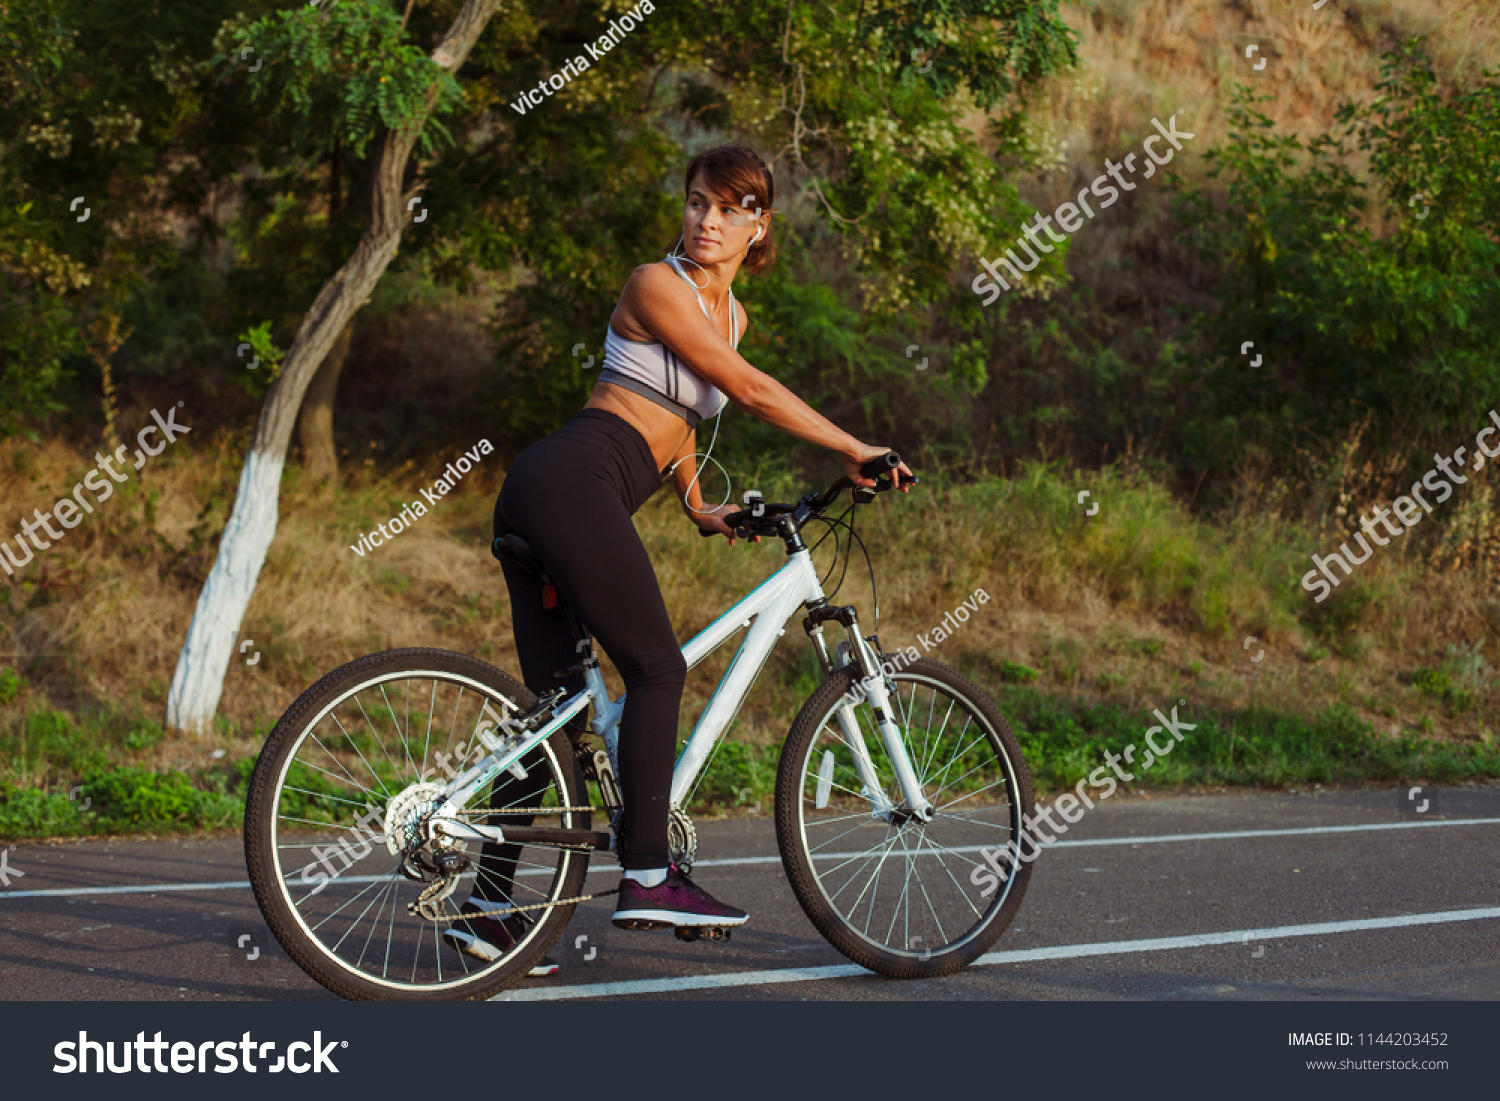 pretty girl on bike